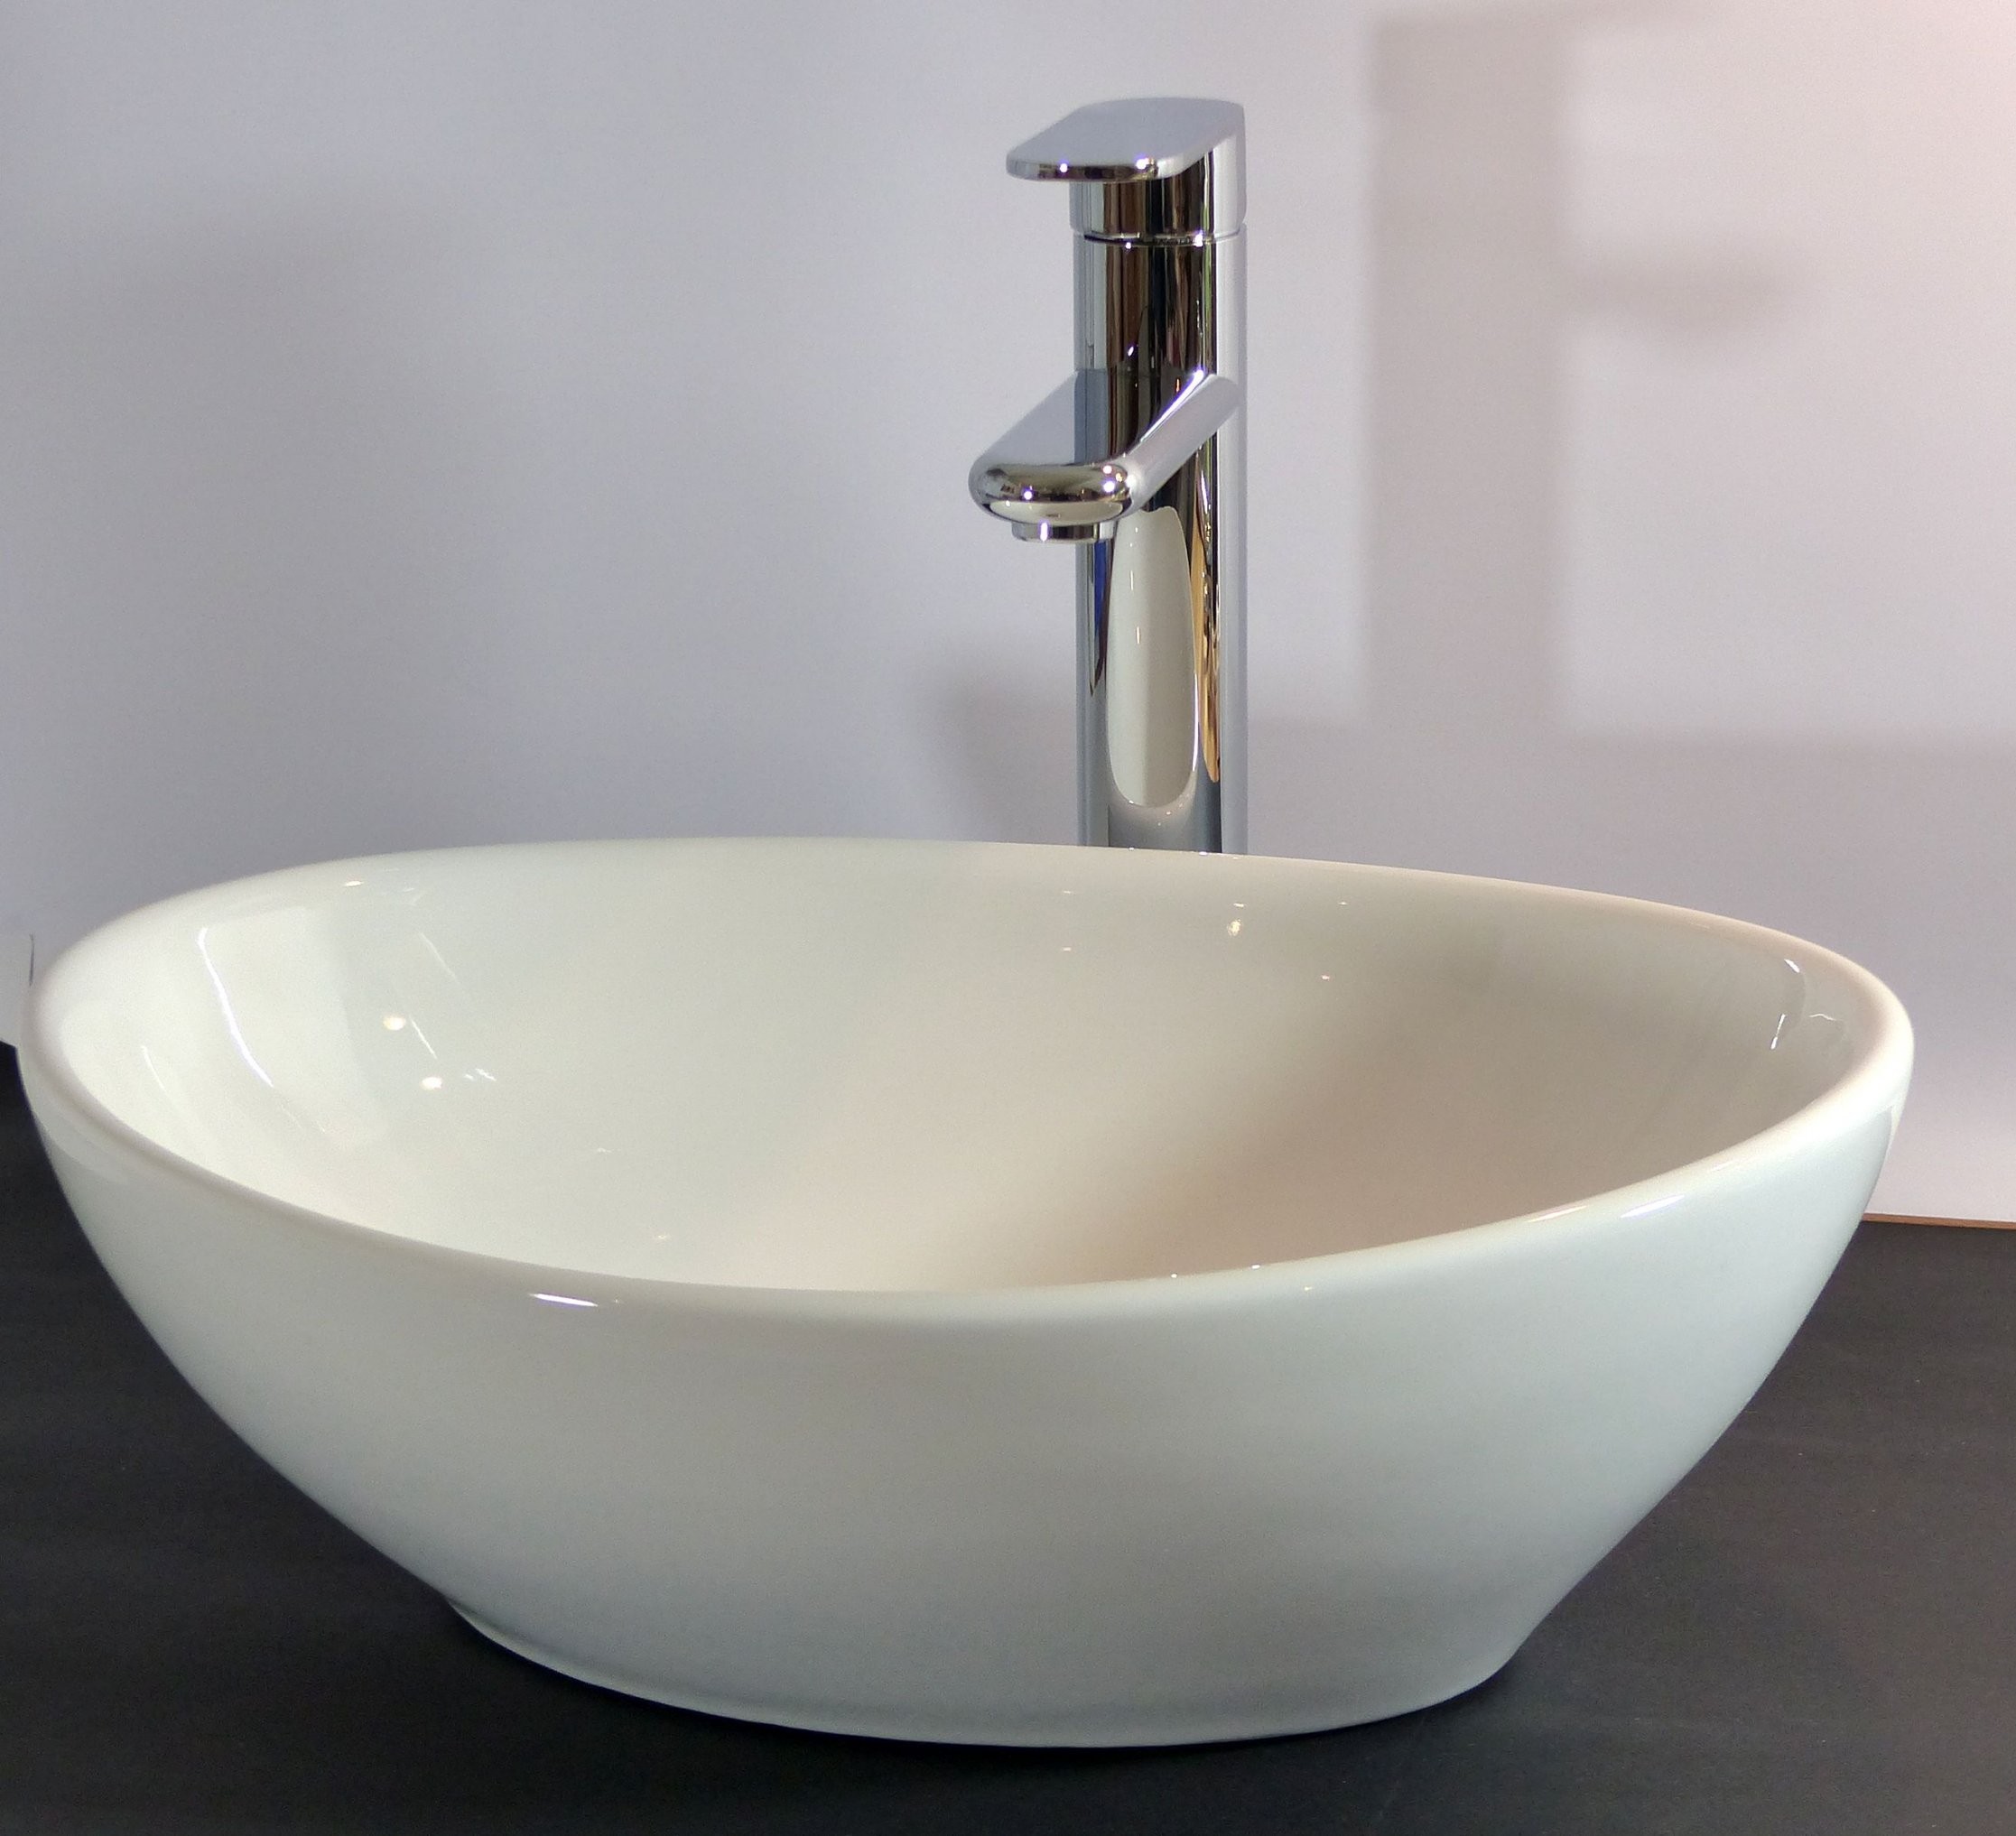 Nero Badshop  Keramik Aufsatz Waschbecken Oval  Online Kaufen von Wc Waschbecken Klein Bild